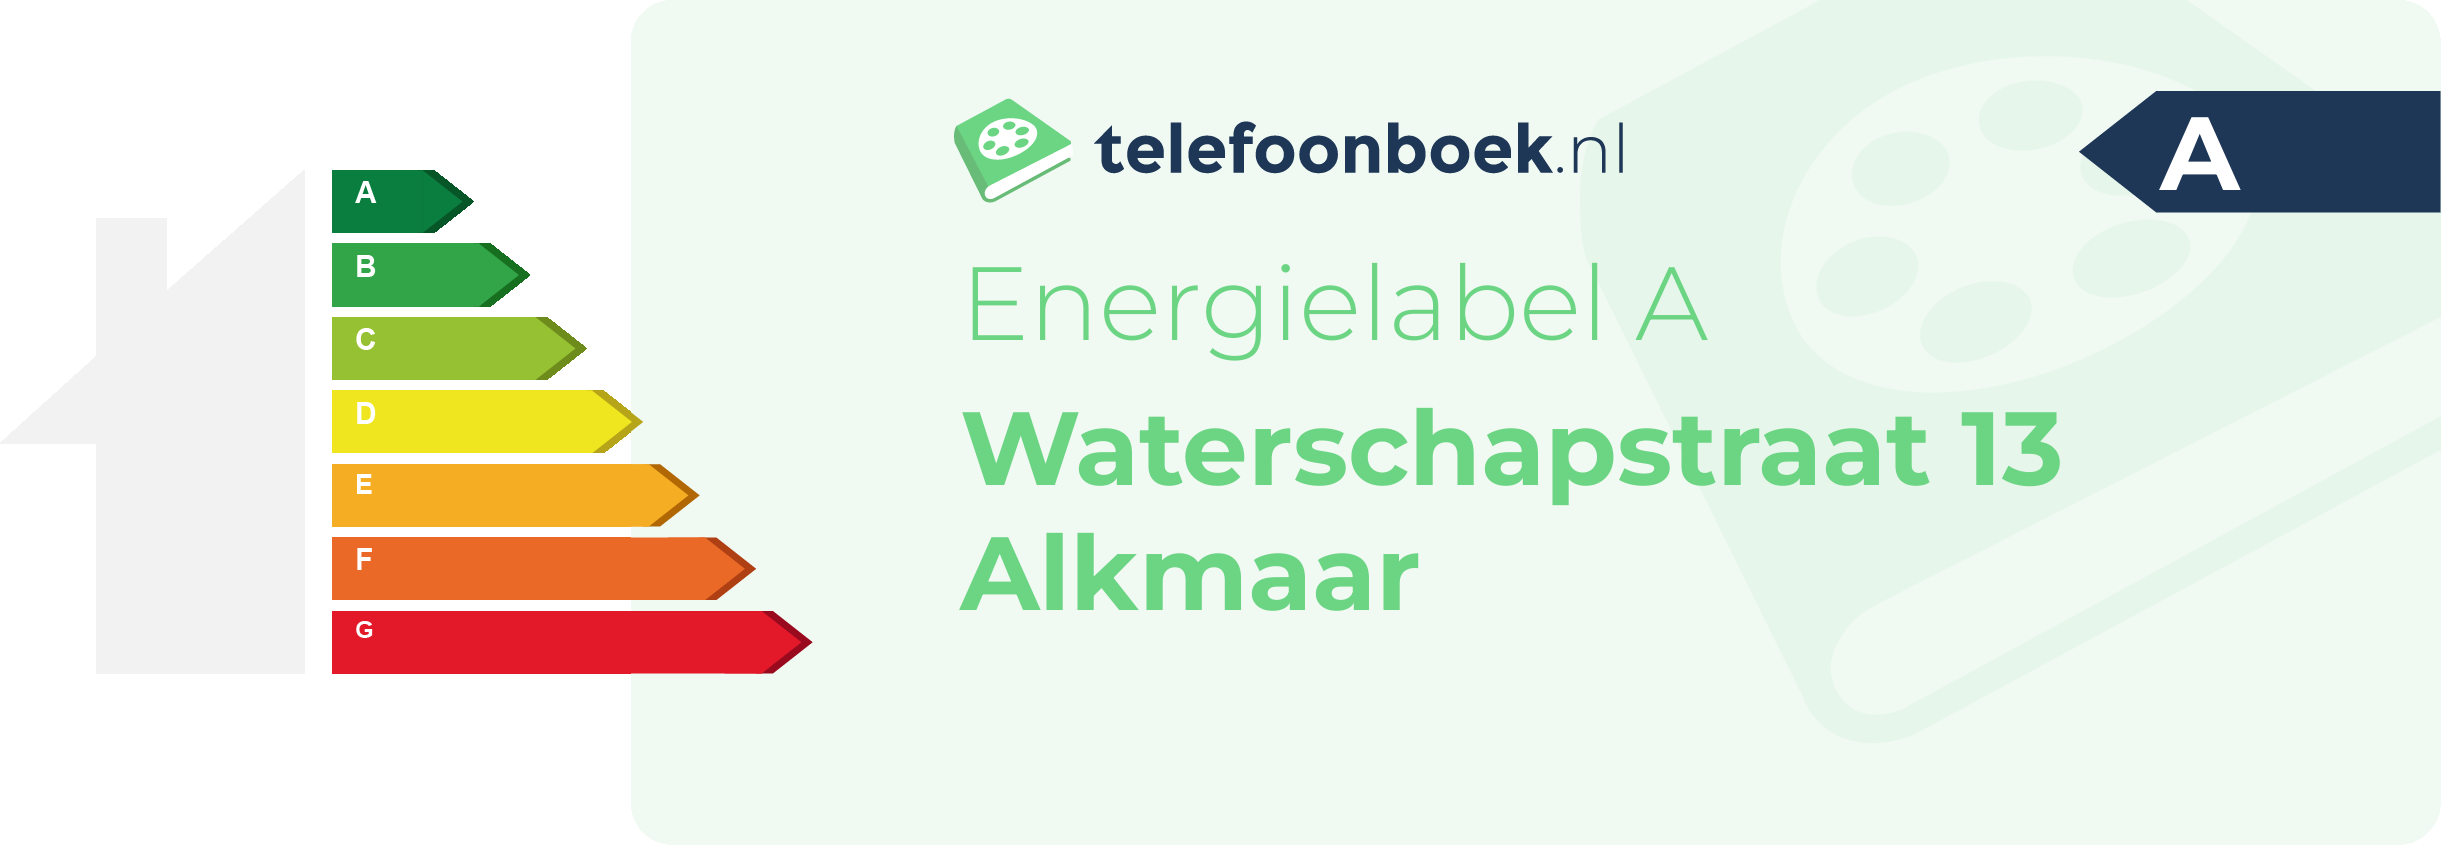 Energielabel Waterschapstraat 13 Alkmaar